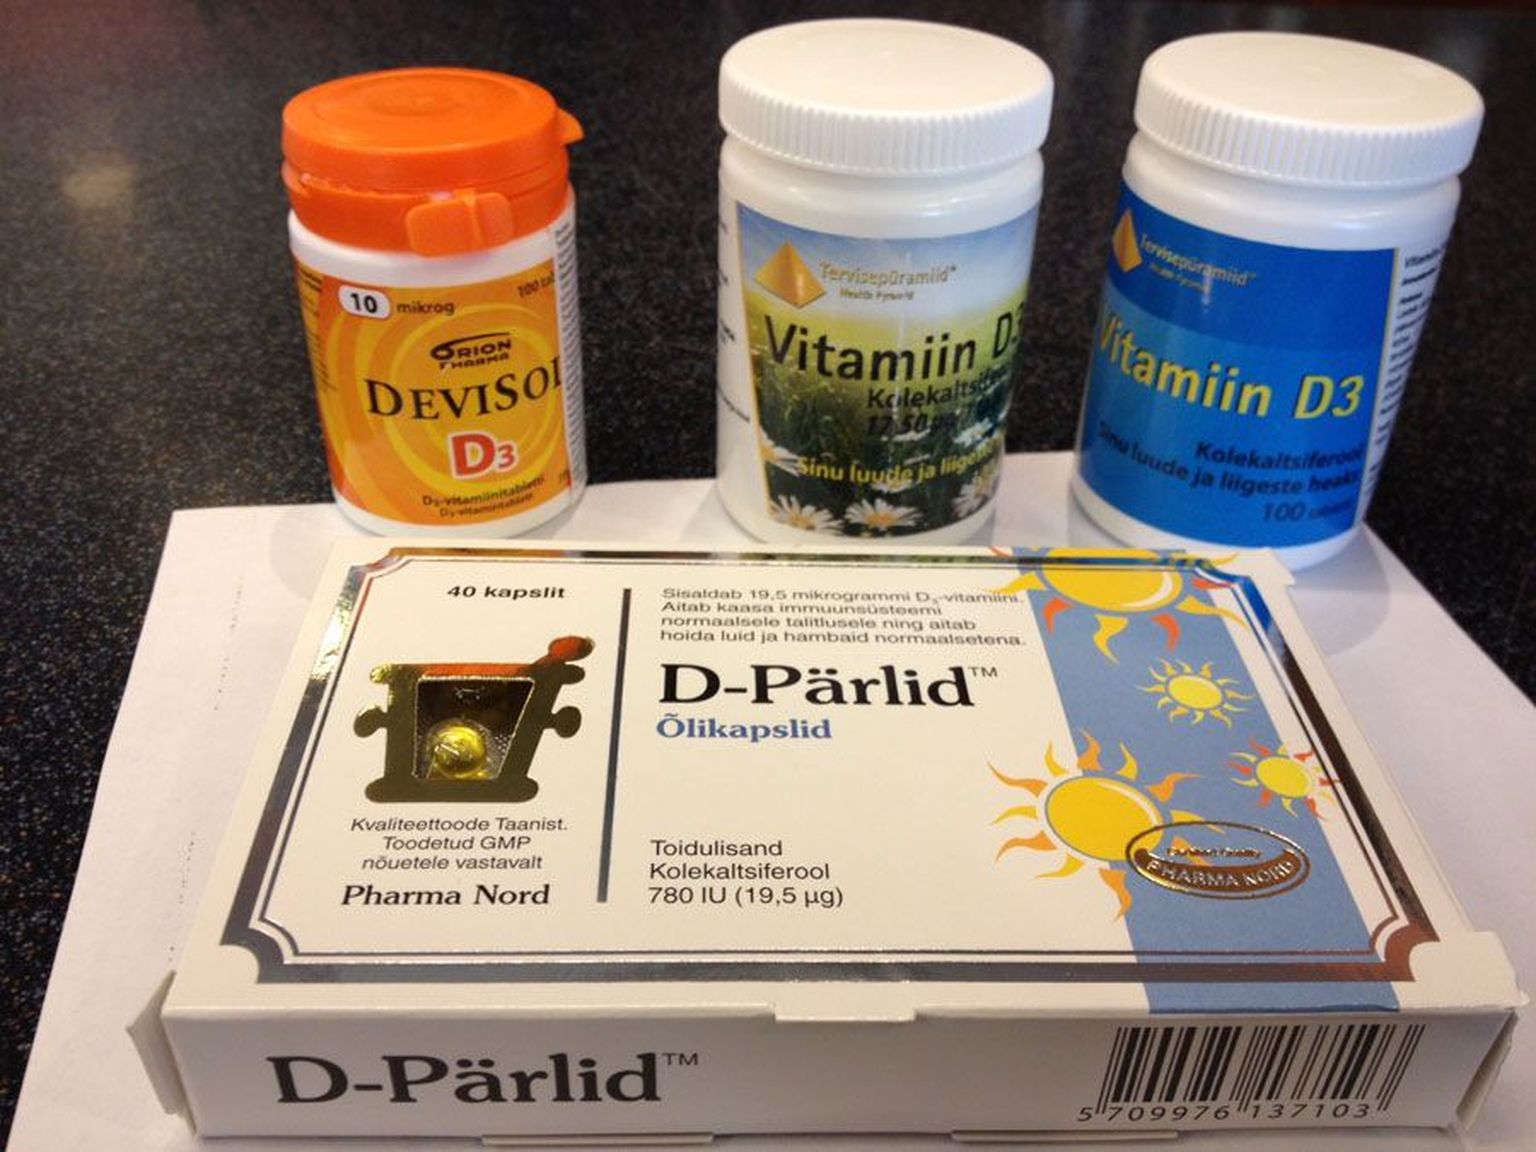 D-vitamiini leiab apteegist erinevates pakendites.